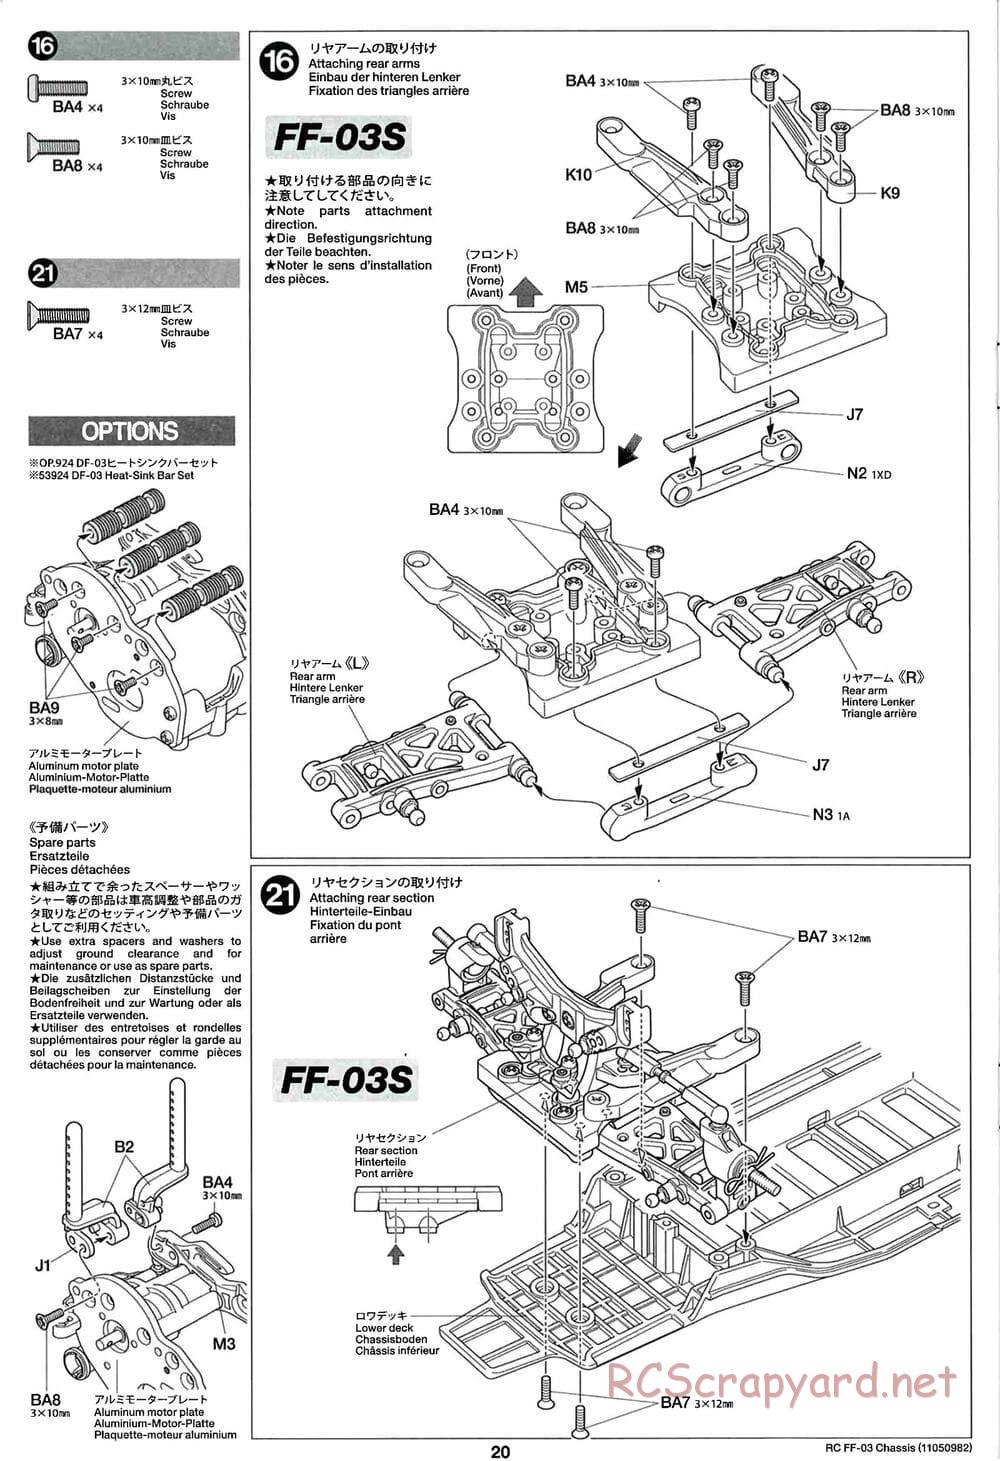 Tamiya - Castrol Honda Civic VTi - FF-03 Chassis - Manual - Page 20